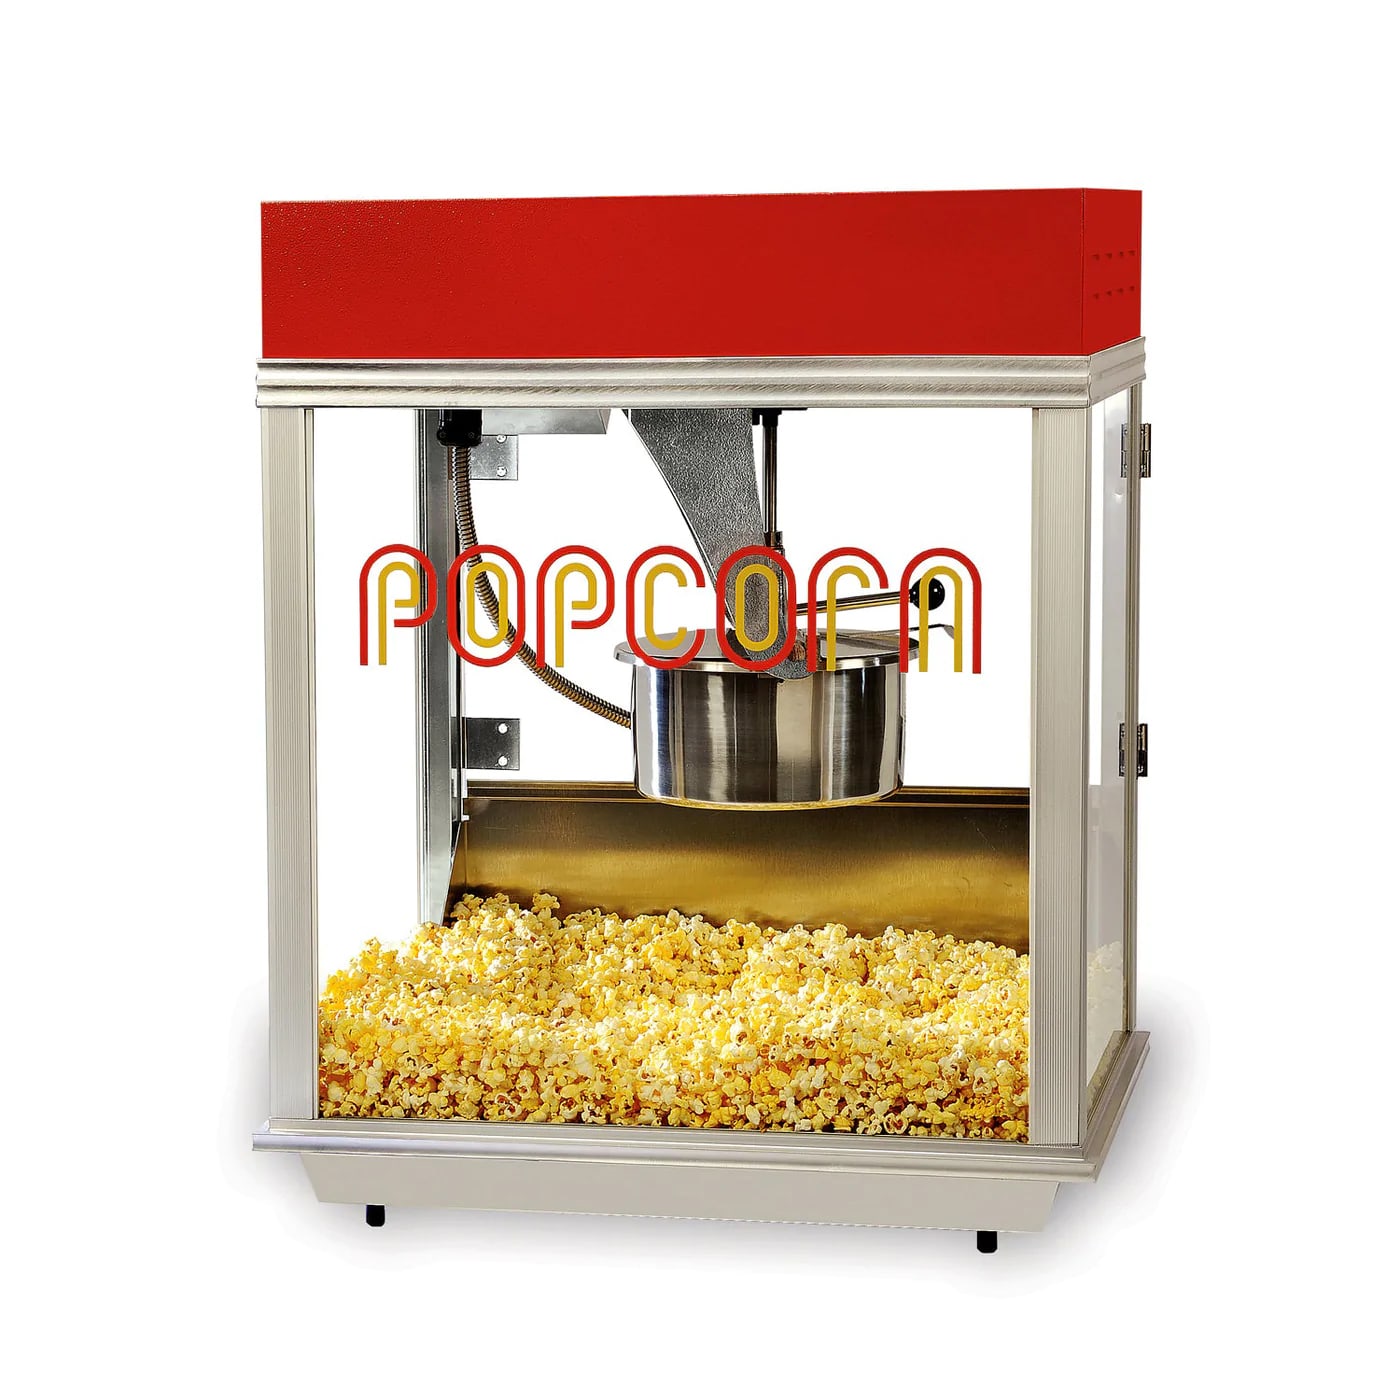 Buy Korona KORONA 41100 Popcorn maker Red, Black, Gold